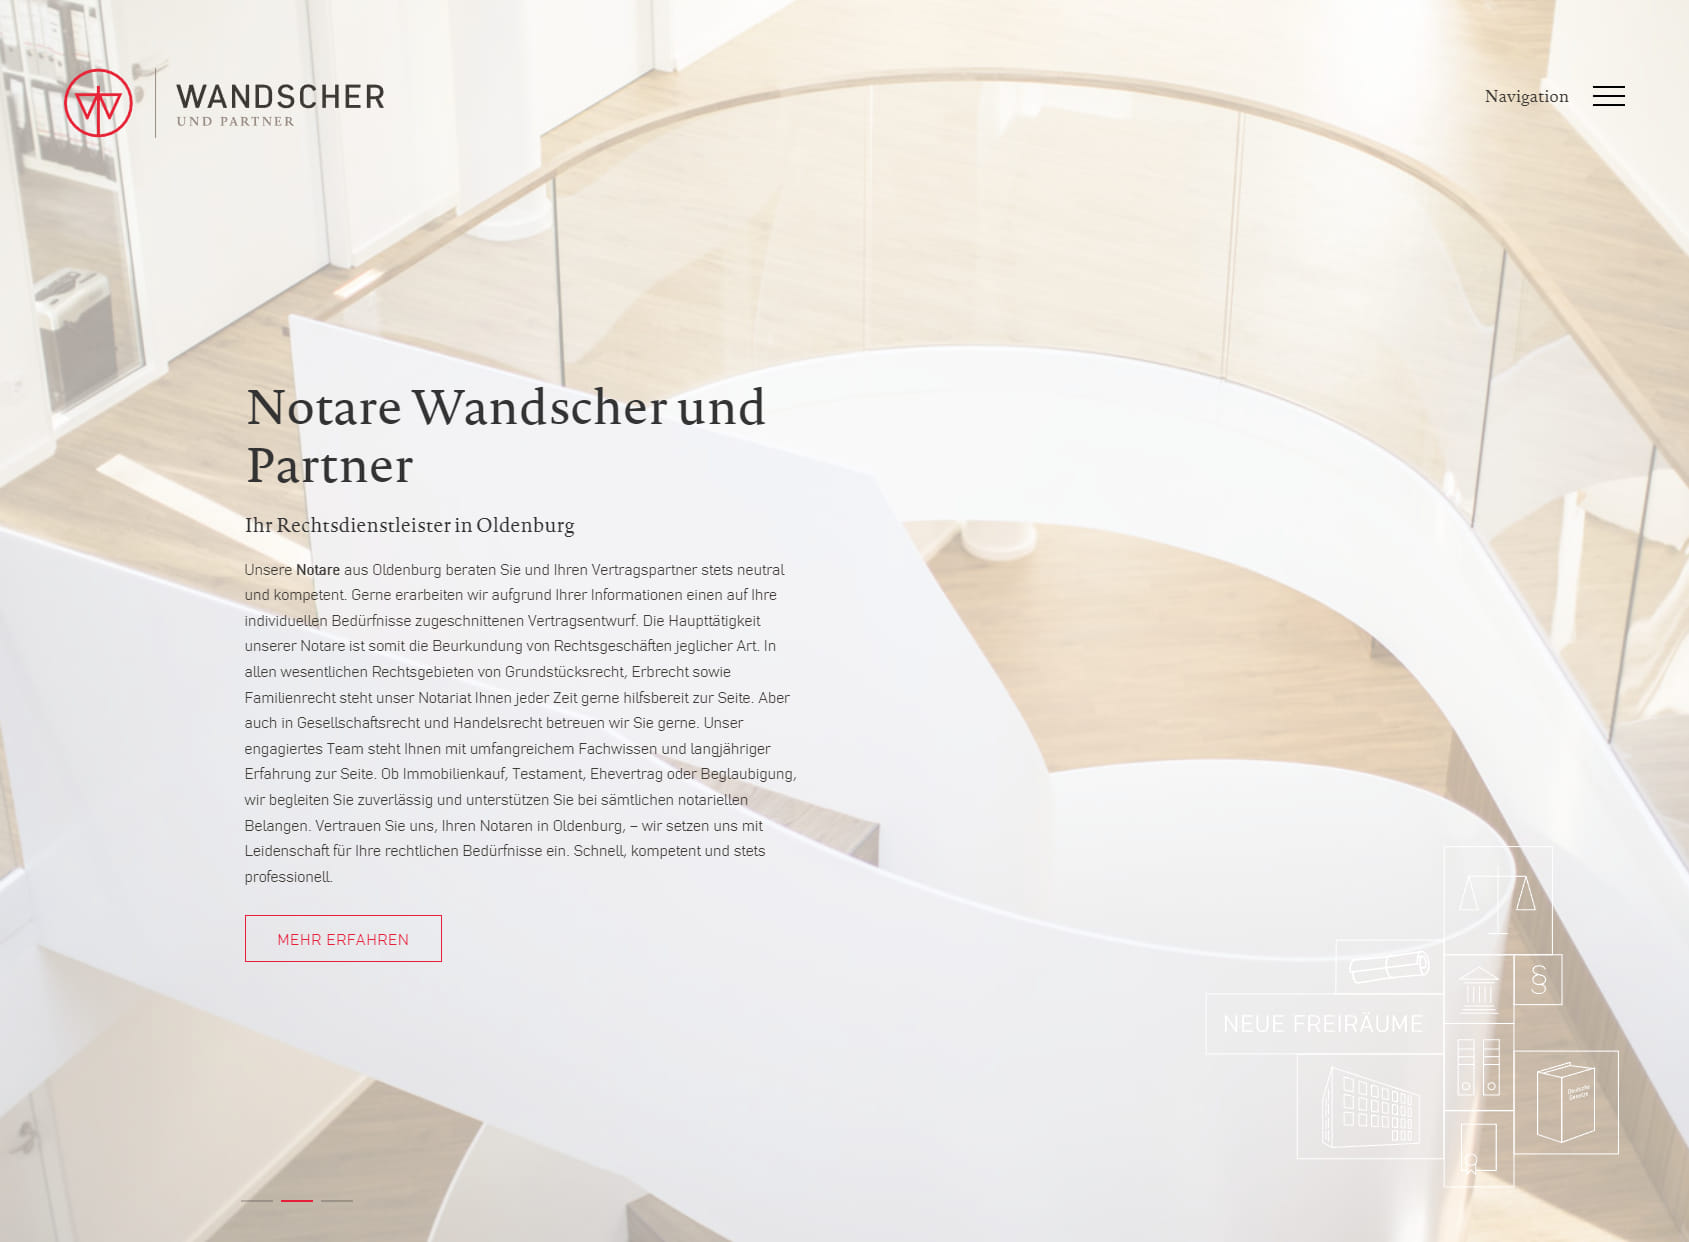 Wandscher & Partner Rechtsanwälte in PartGmbB and notaries